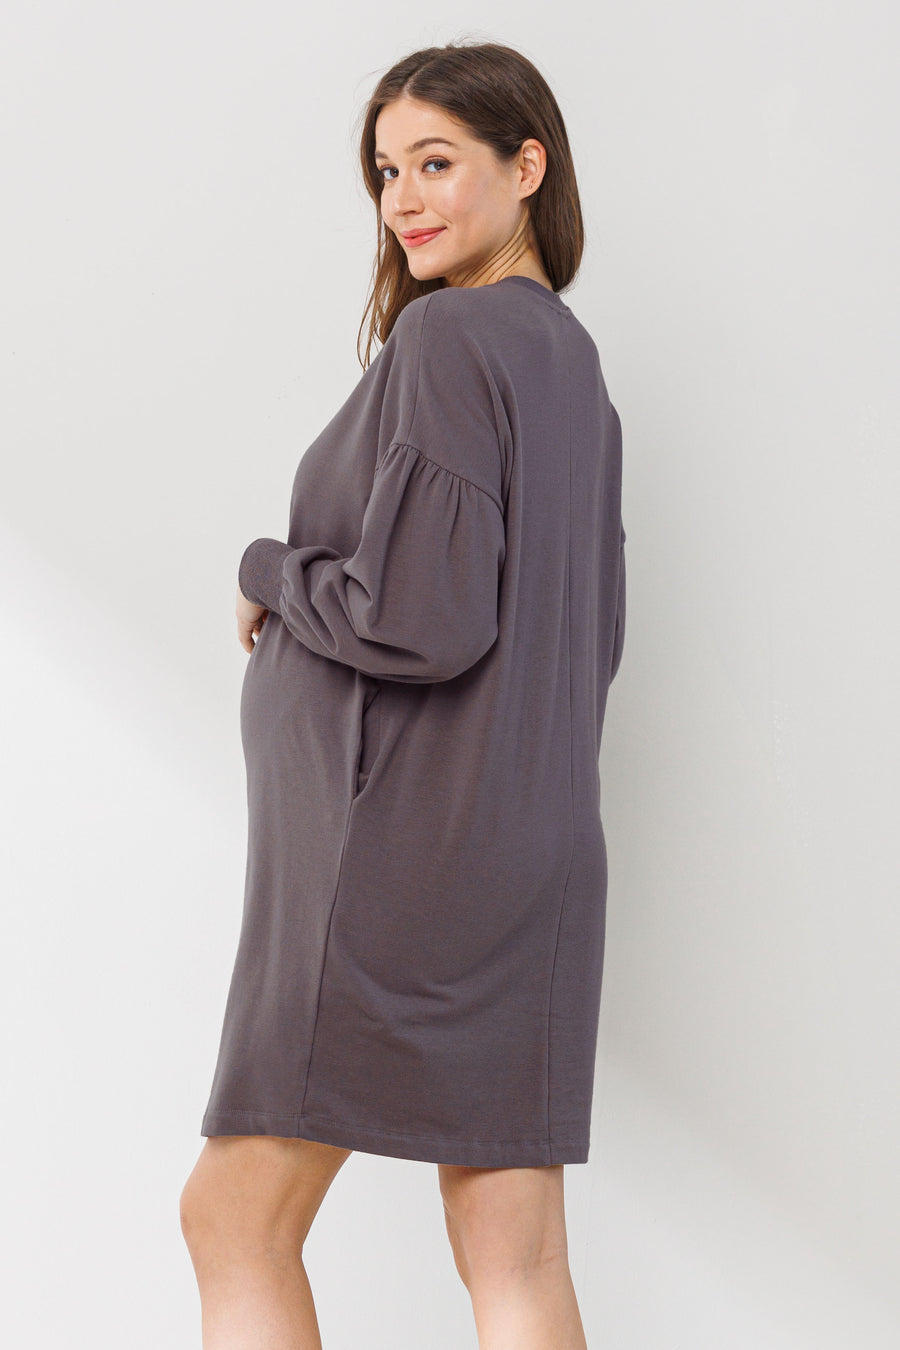 Camilla Sweater Pocket Dress XL